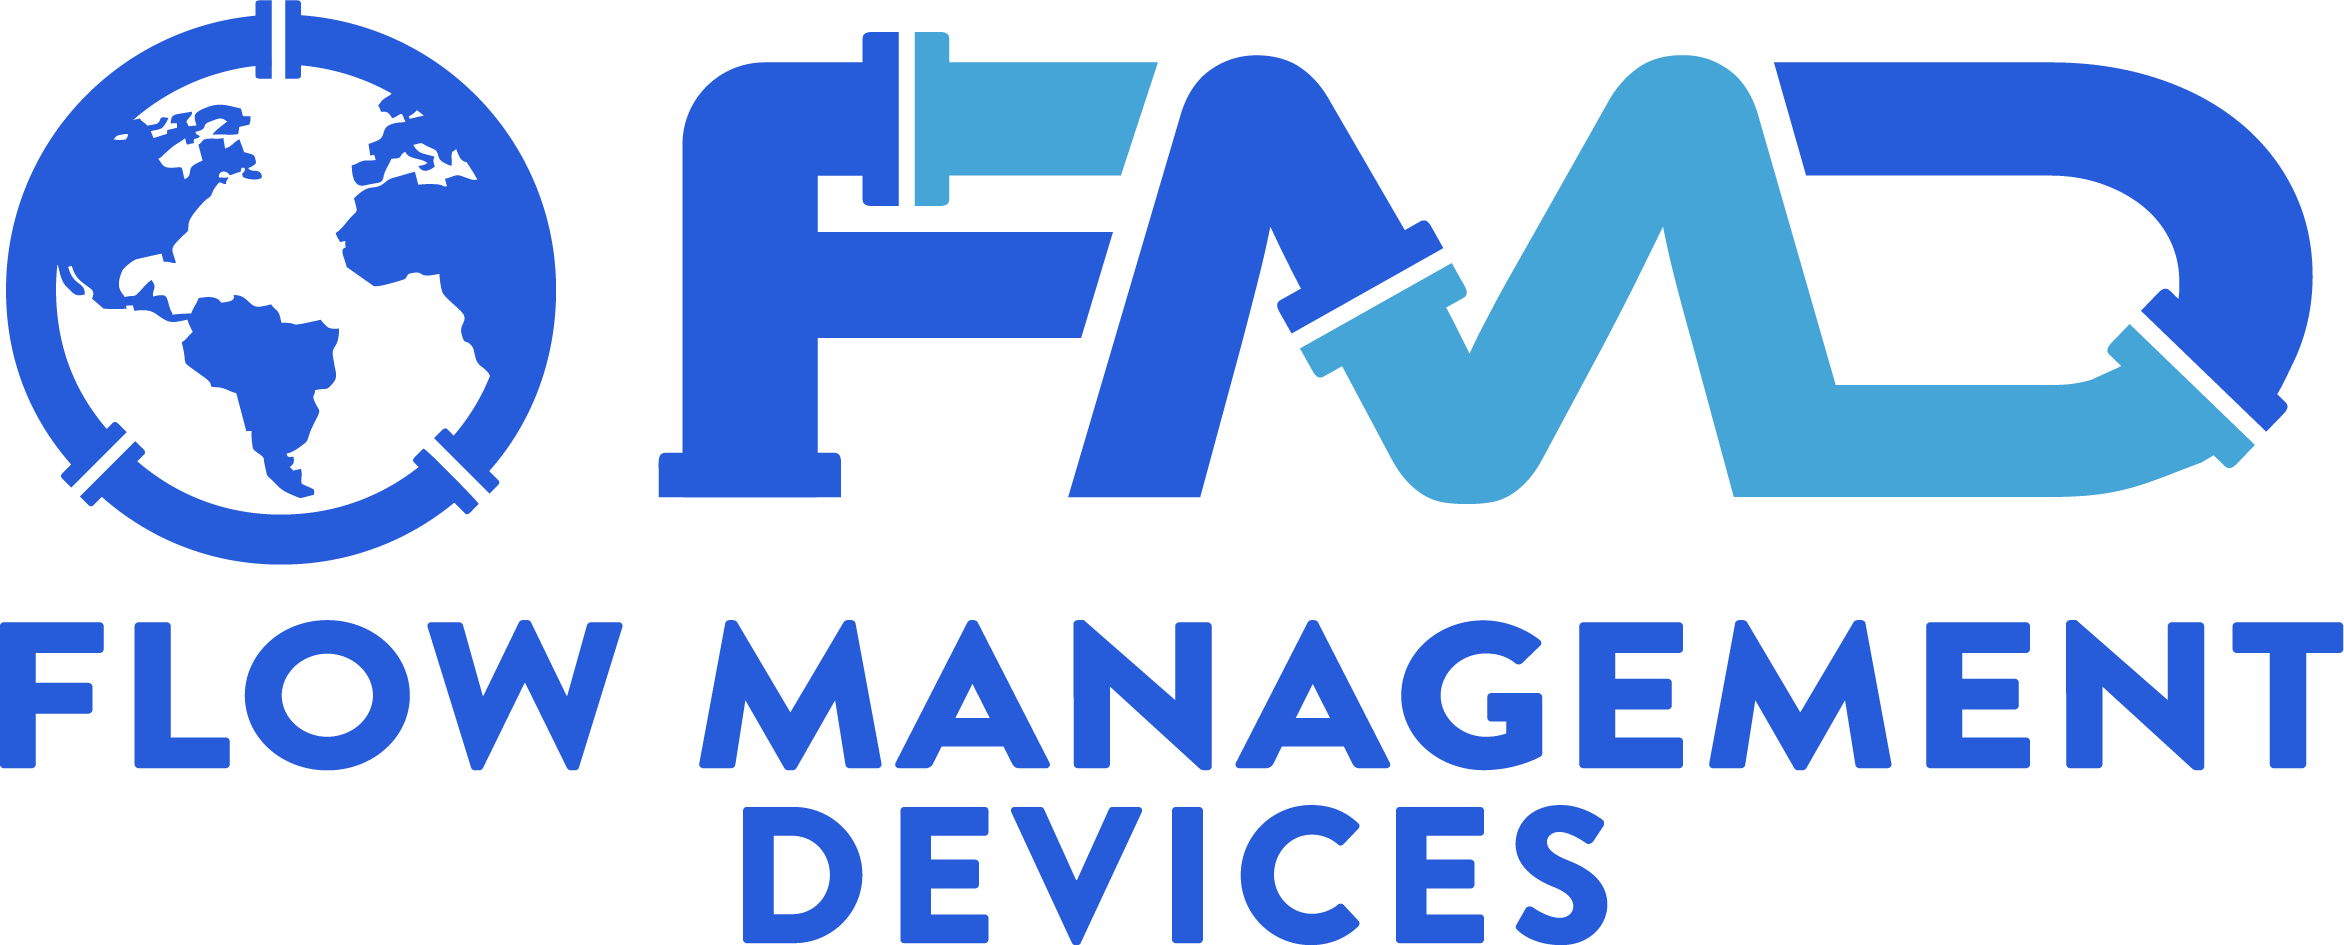 Flow Management Devices logo